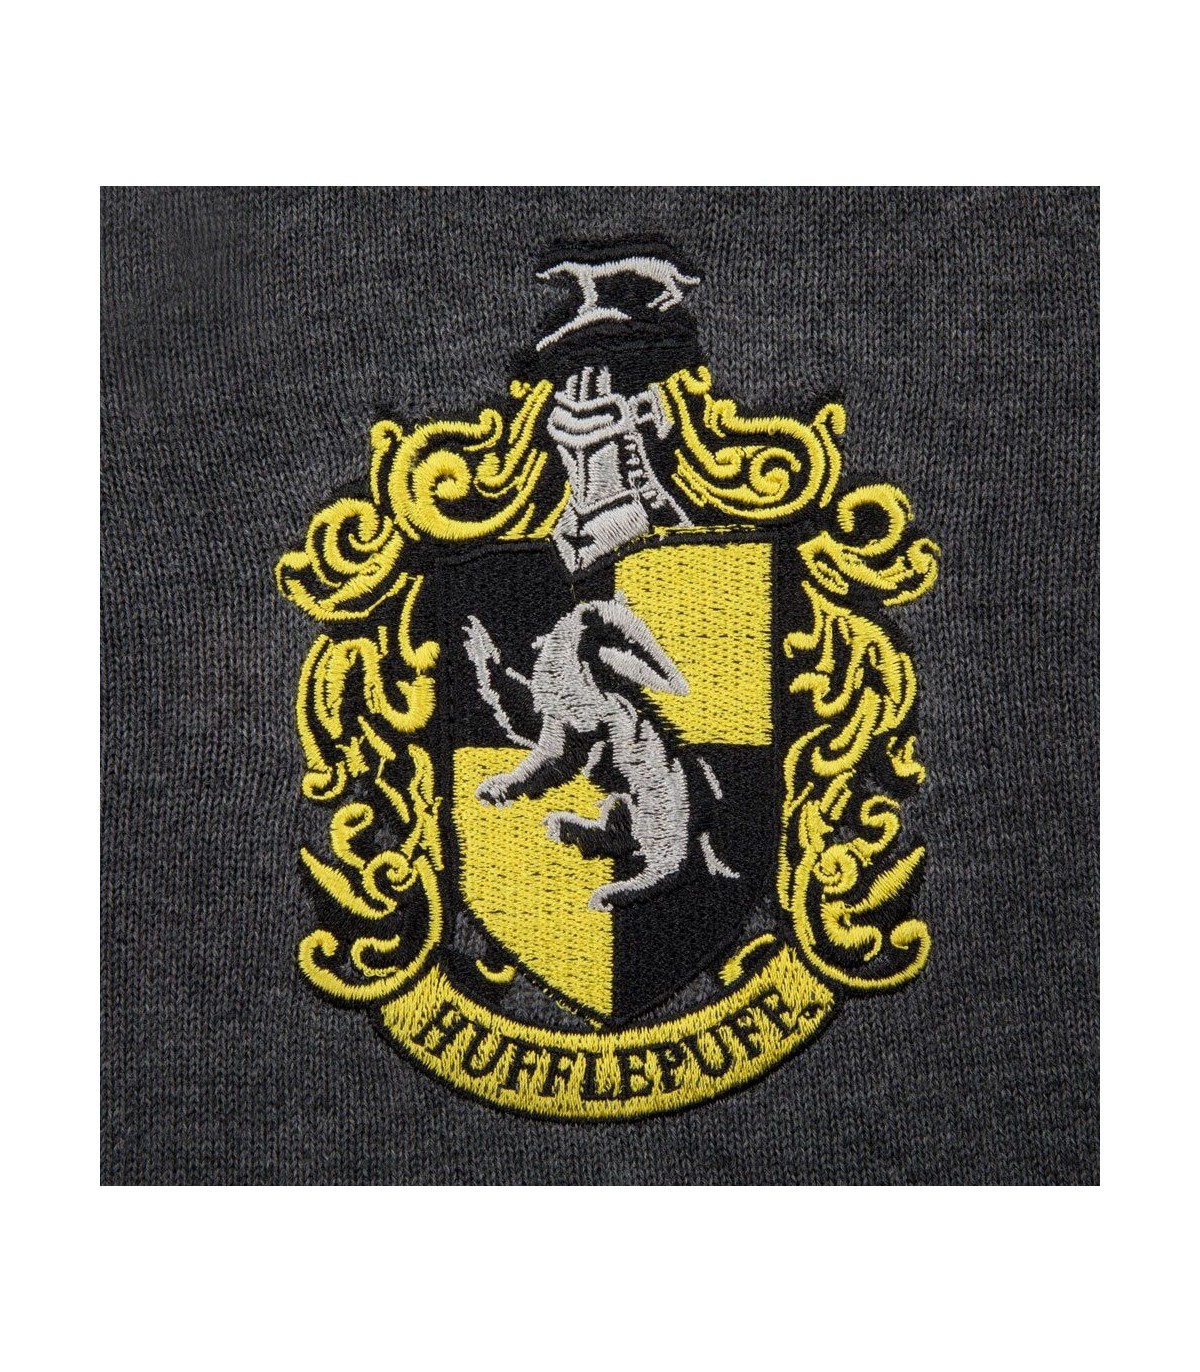 Sabor Harry Potter Gorro y Guantes Completos Tamaño Adulto Casa de Hufflepuff Original 100% Oficial Escuela de Magia Hogwarts 